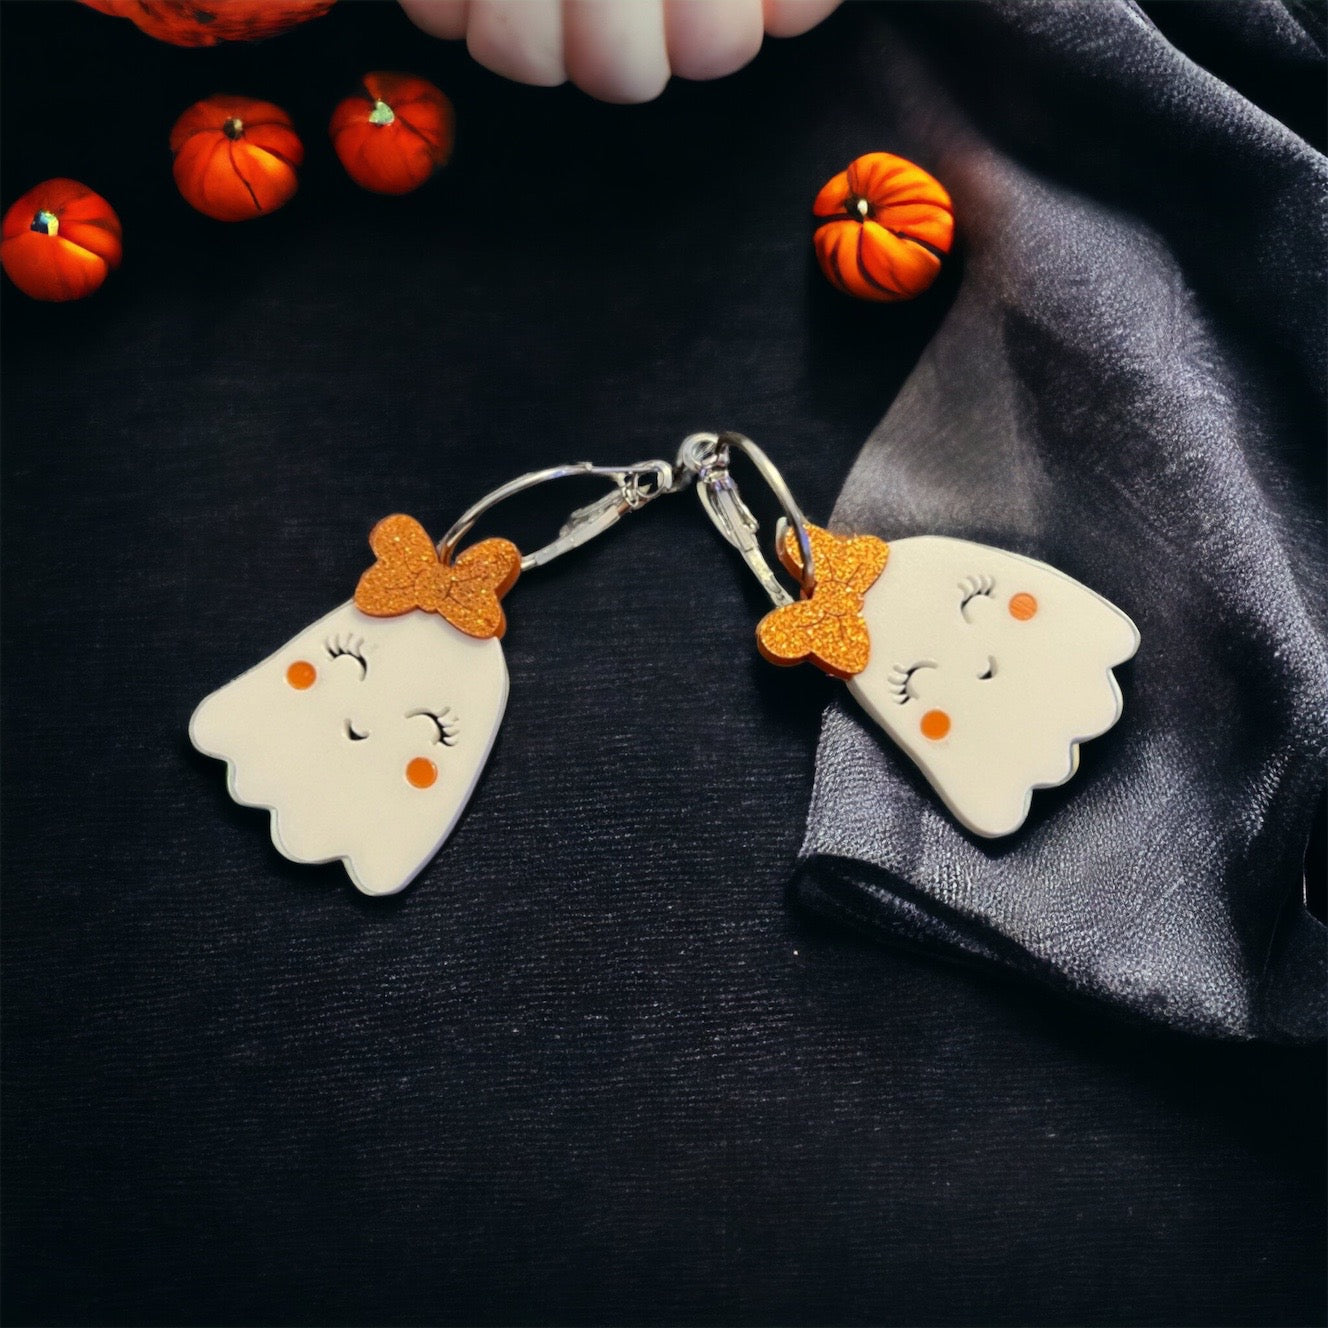 Halloween Ghost Earrings - Halloween Earrings, Ghost Jewelry, Halloween Jewelry, Cute Halloween Earrings, Pumpkin Earrings, Trick or Treat